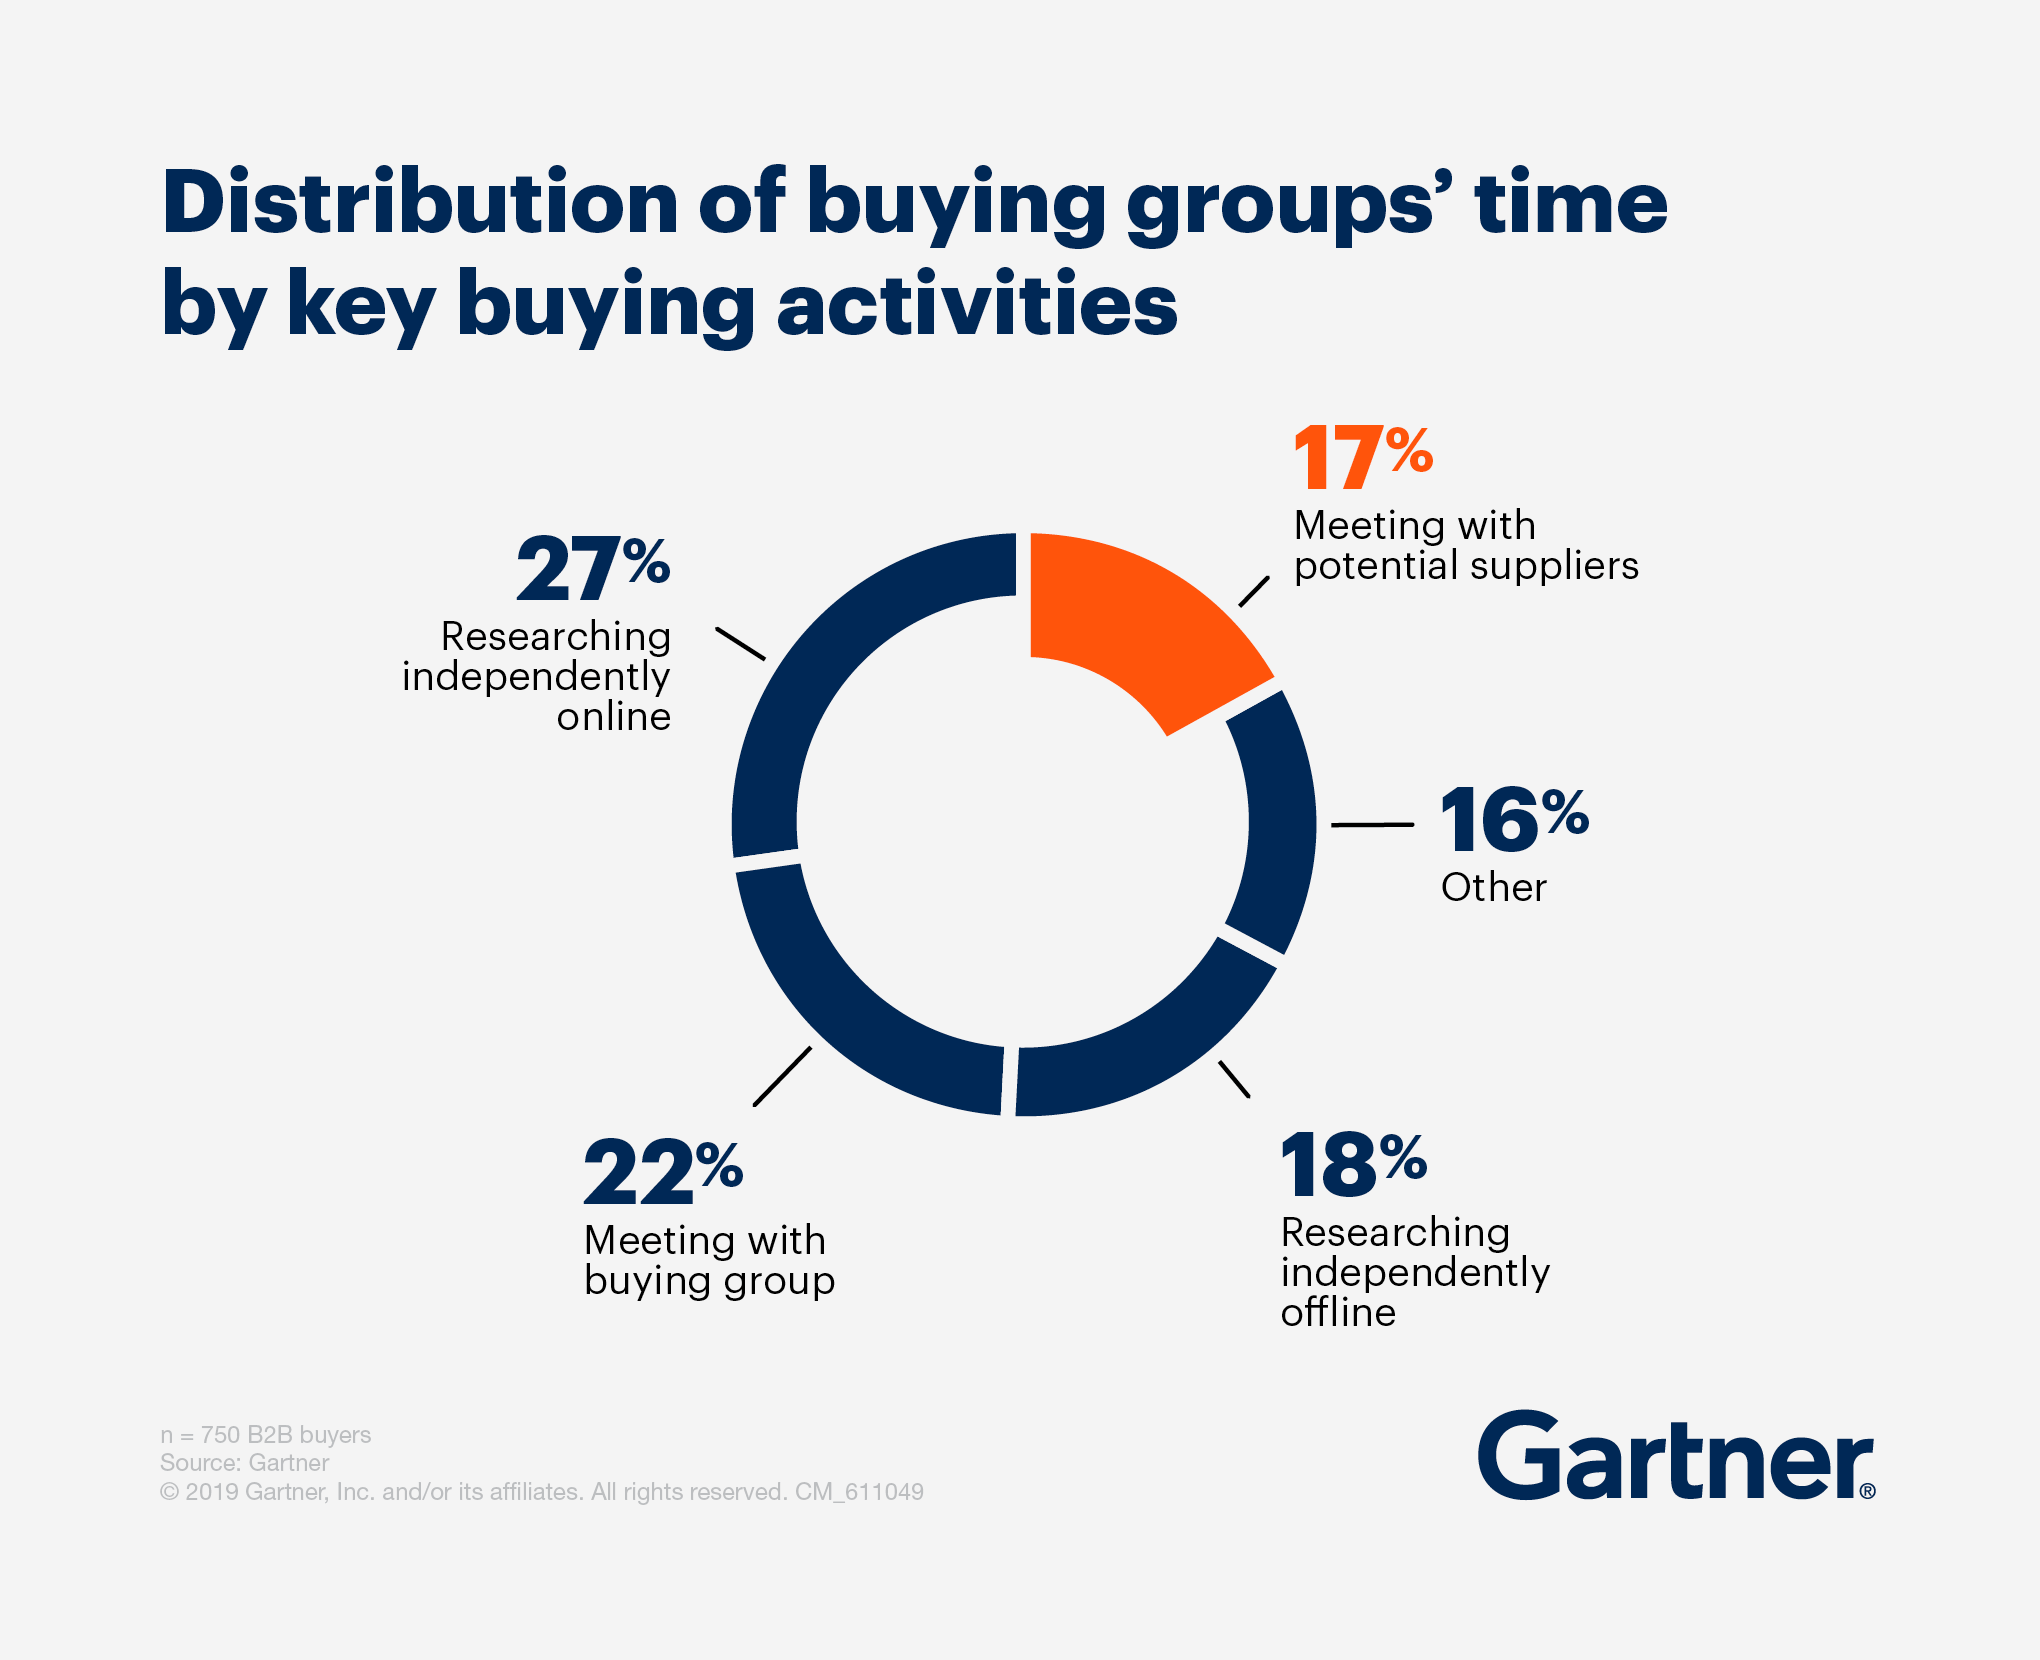 Gartner - Distribution of buying groups' time